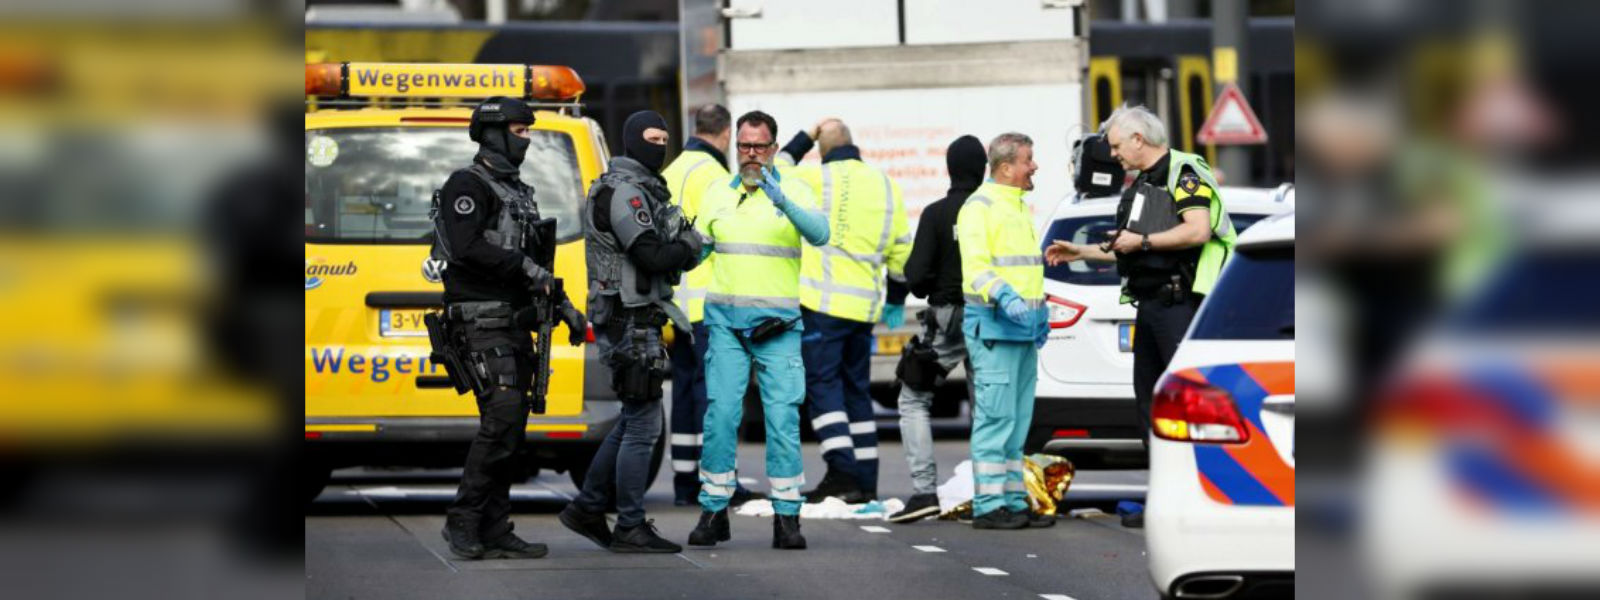 Dutch police arrest suspect in Utrecht shooting